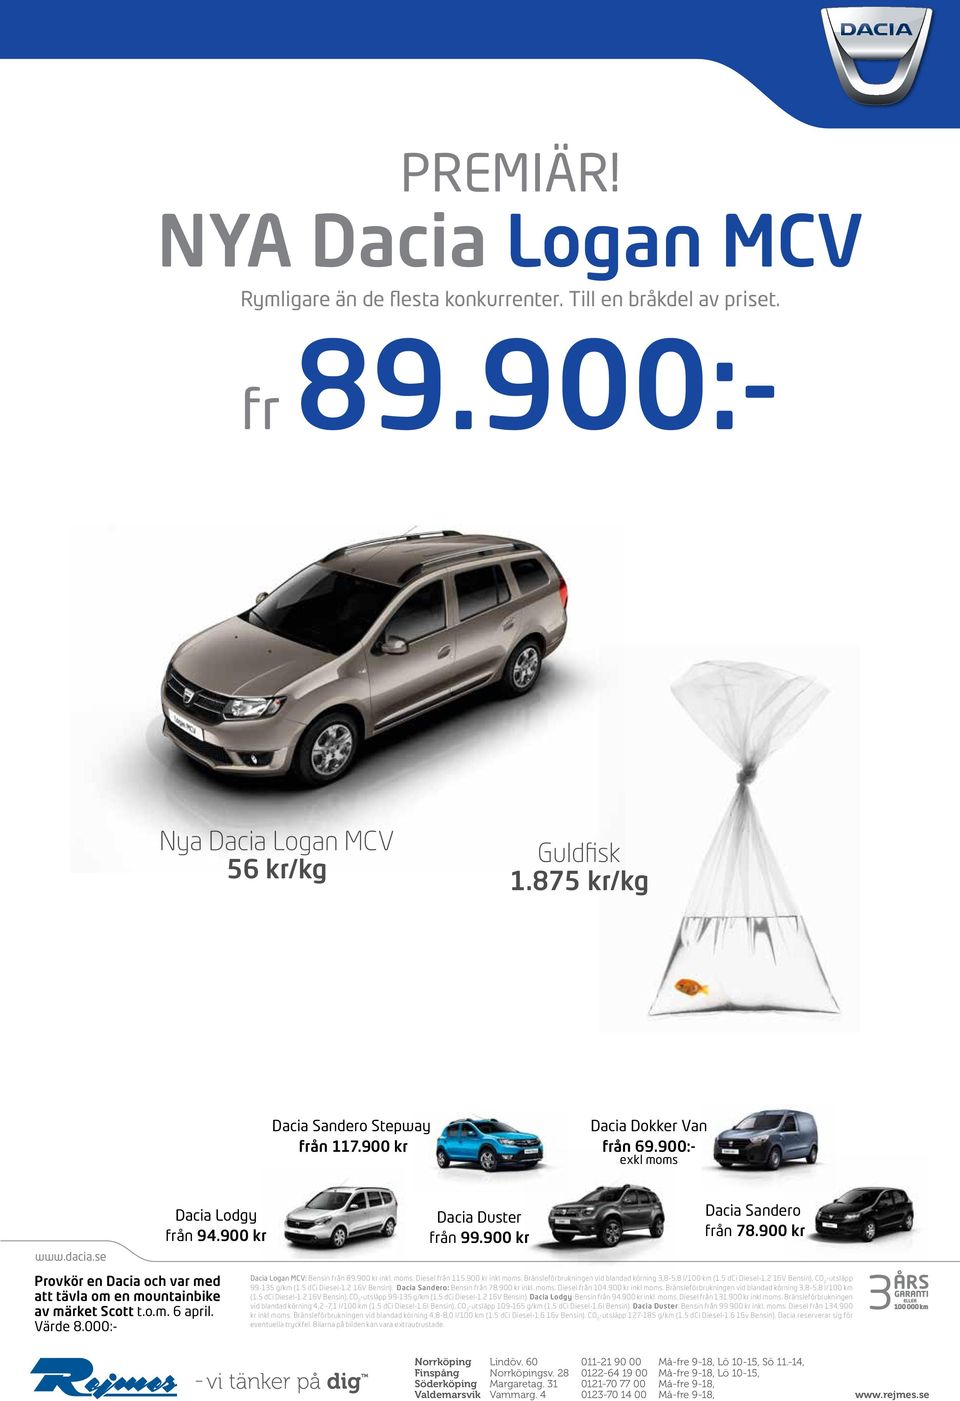 000:- Dacia Duster från 99.900 kr Dacia Sandero från 78.900 kr Dacia Logan MCV: Bensin från 89.900 kr inkl. moms. Diesel från 115.900 kr inkl moms.